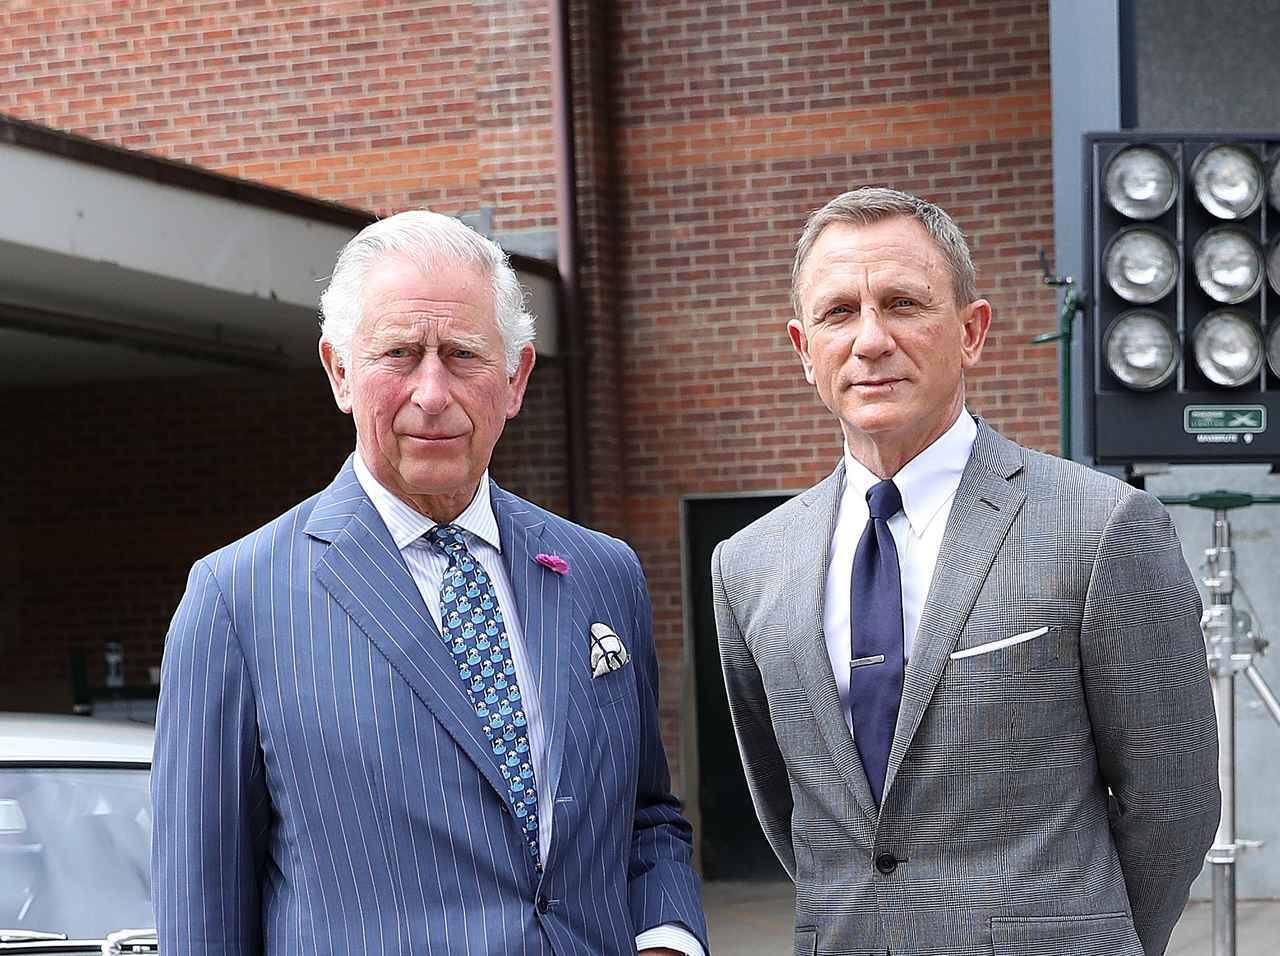 イギリス王室のチャールズ皇太子 007最新作 Bond 25 に出演打診か 19年8月5日 エキサイトニュース